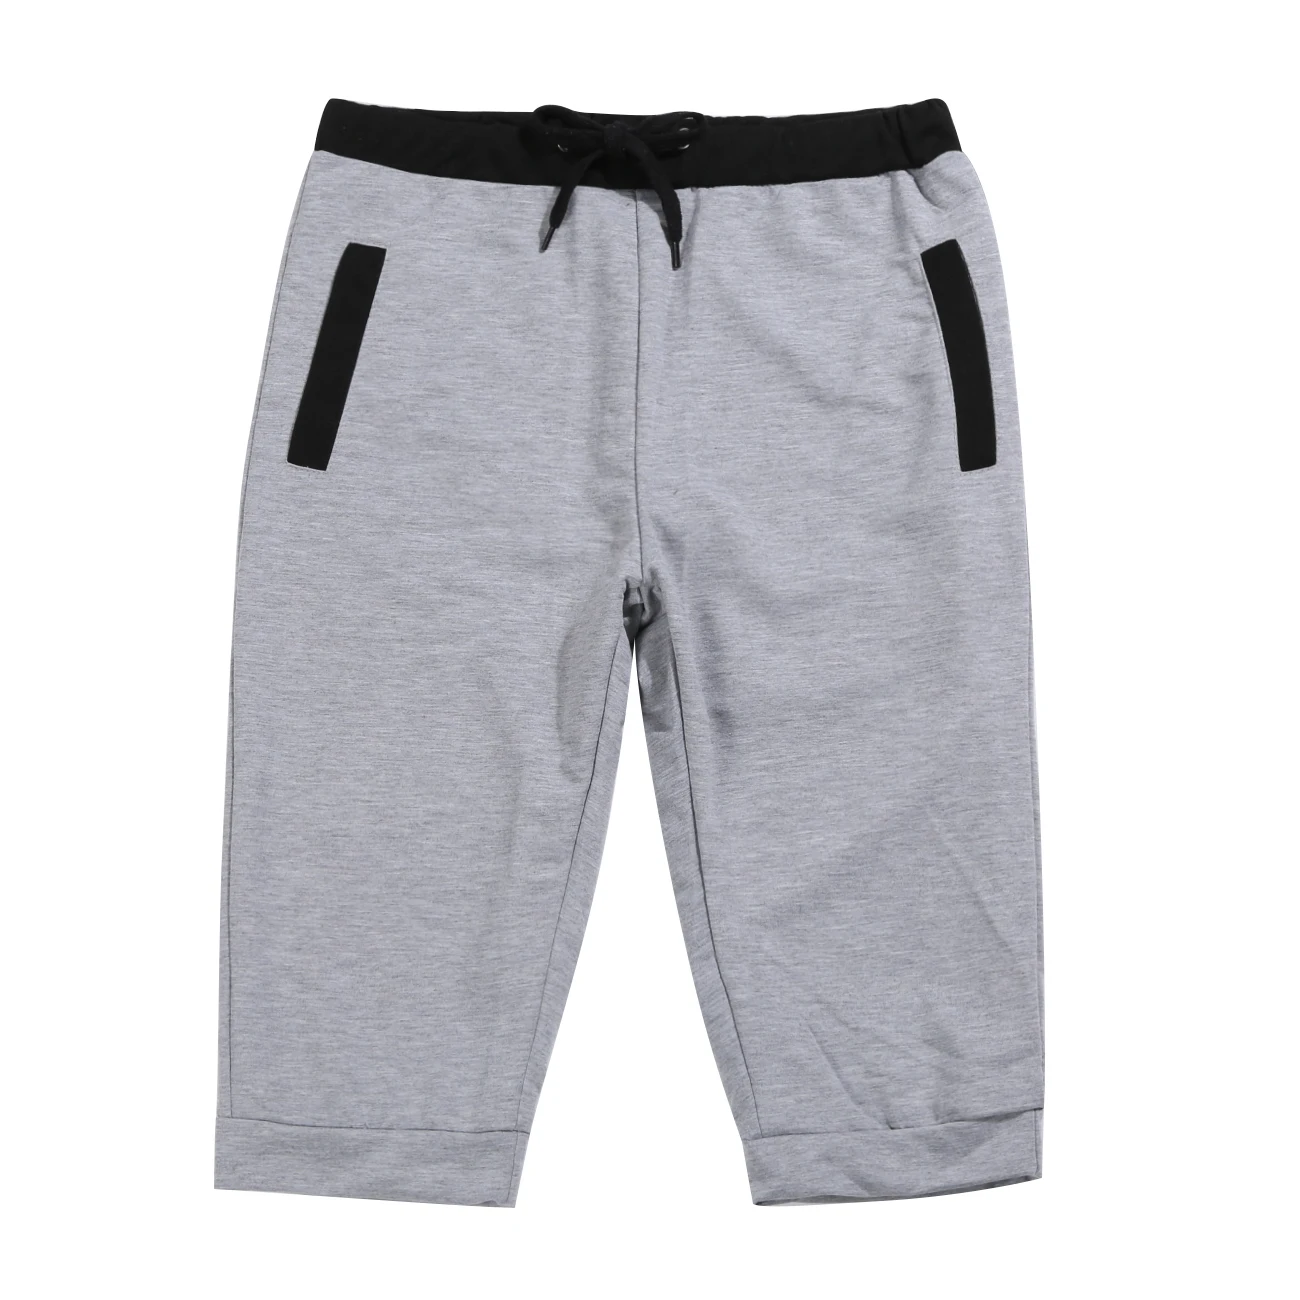 Мужские Короткие хлопковые повседневные спортивные шорты, облегающие брюки до колена для бега, бегунов, тренажерного зала - Цвет: Серый